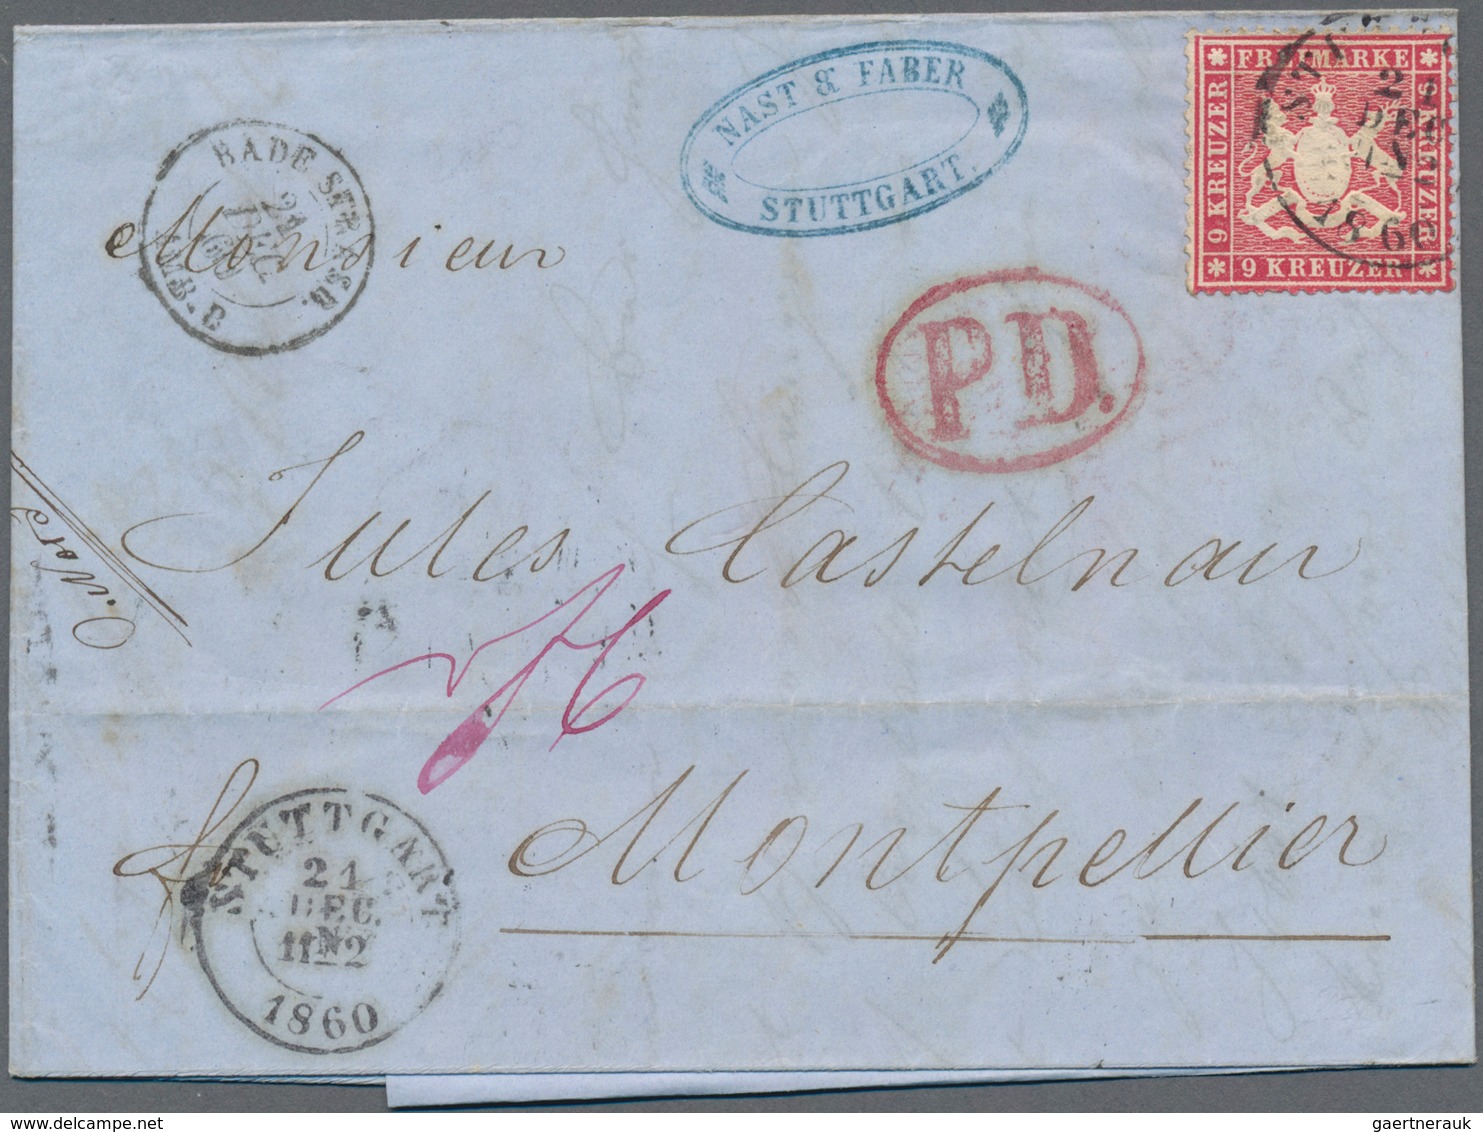 Württemberg - Marken und Briefe: 1642/1889, STUTTGART, umfassende Heimat-/Postgeschichte-Sammlung vo